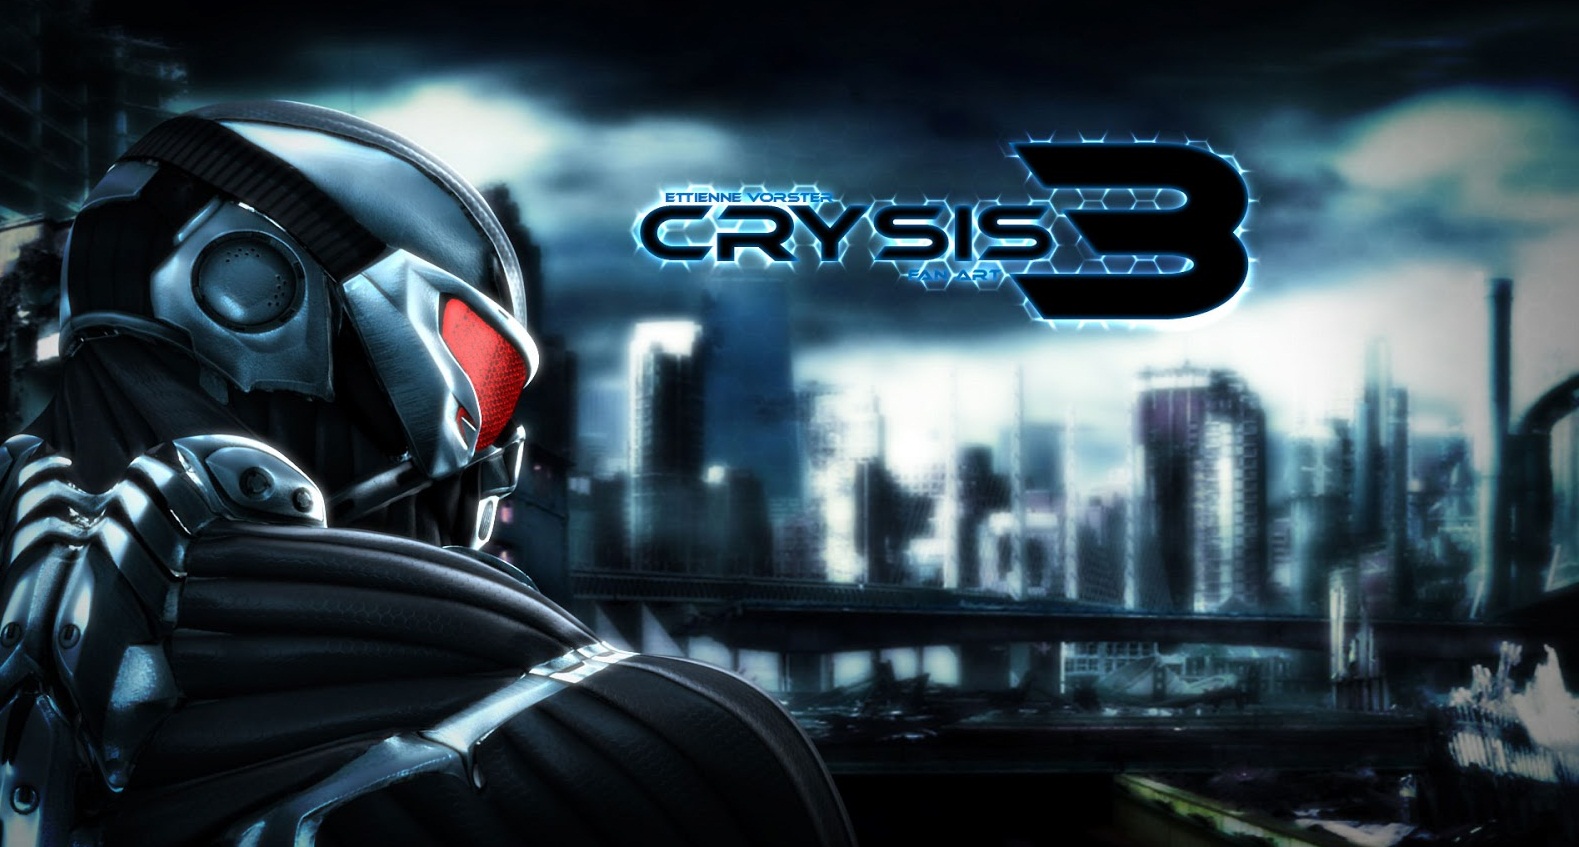 crysis 3 download free